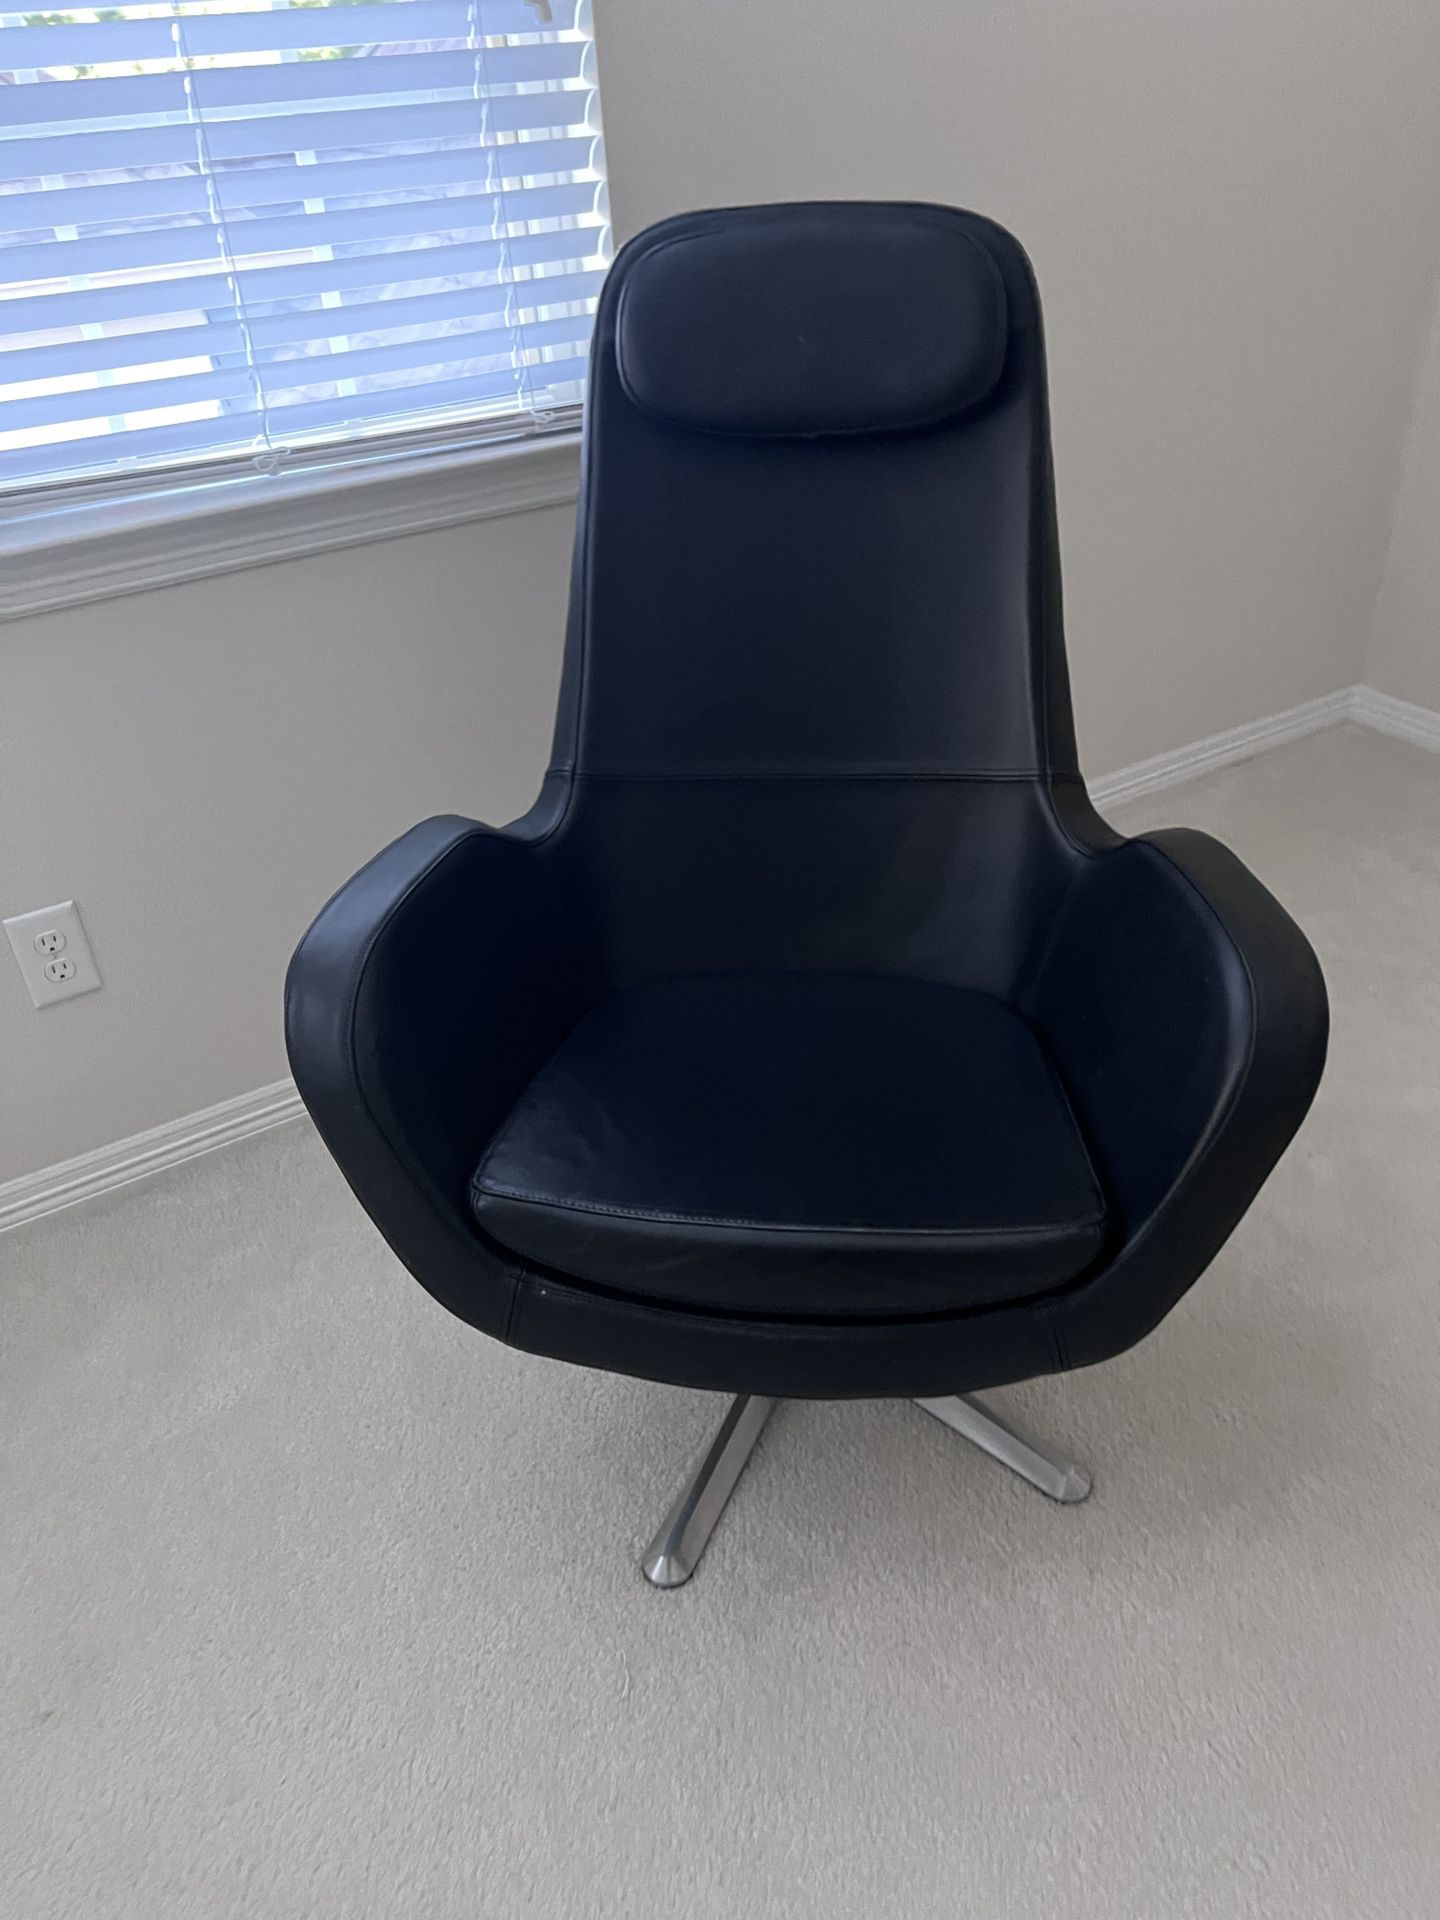 IKEA Swivel Chair in Black Leatherette